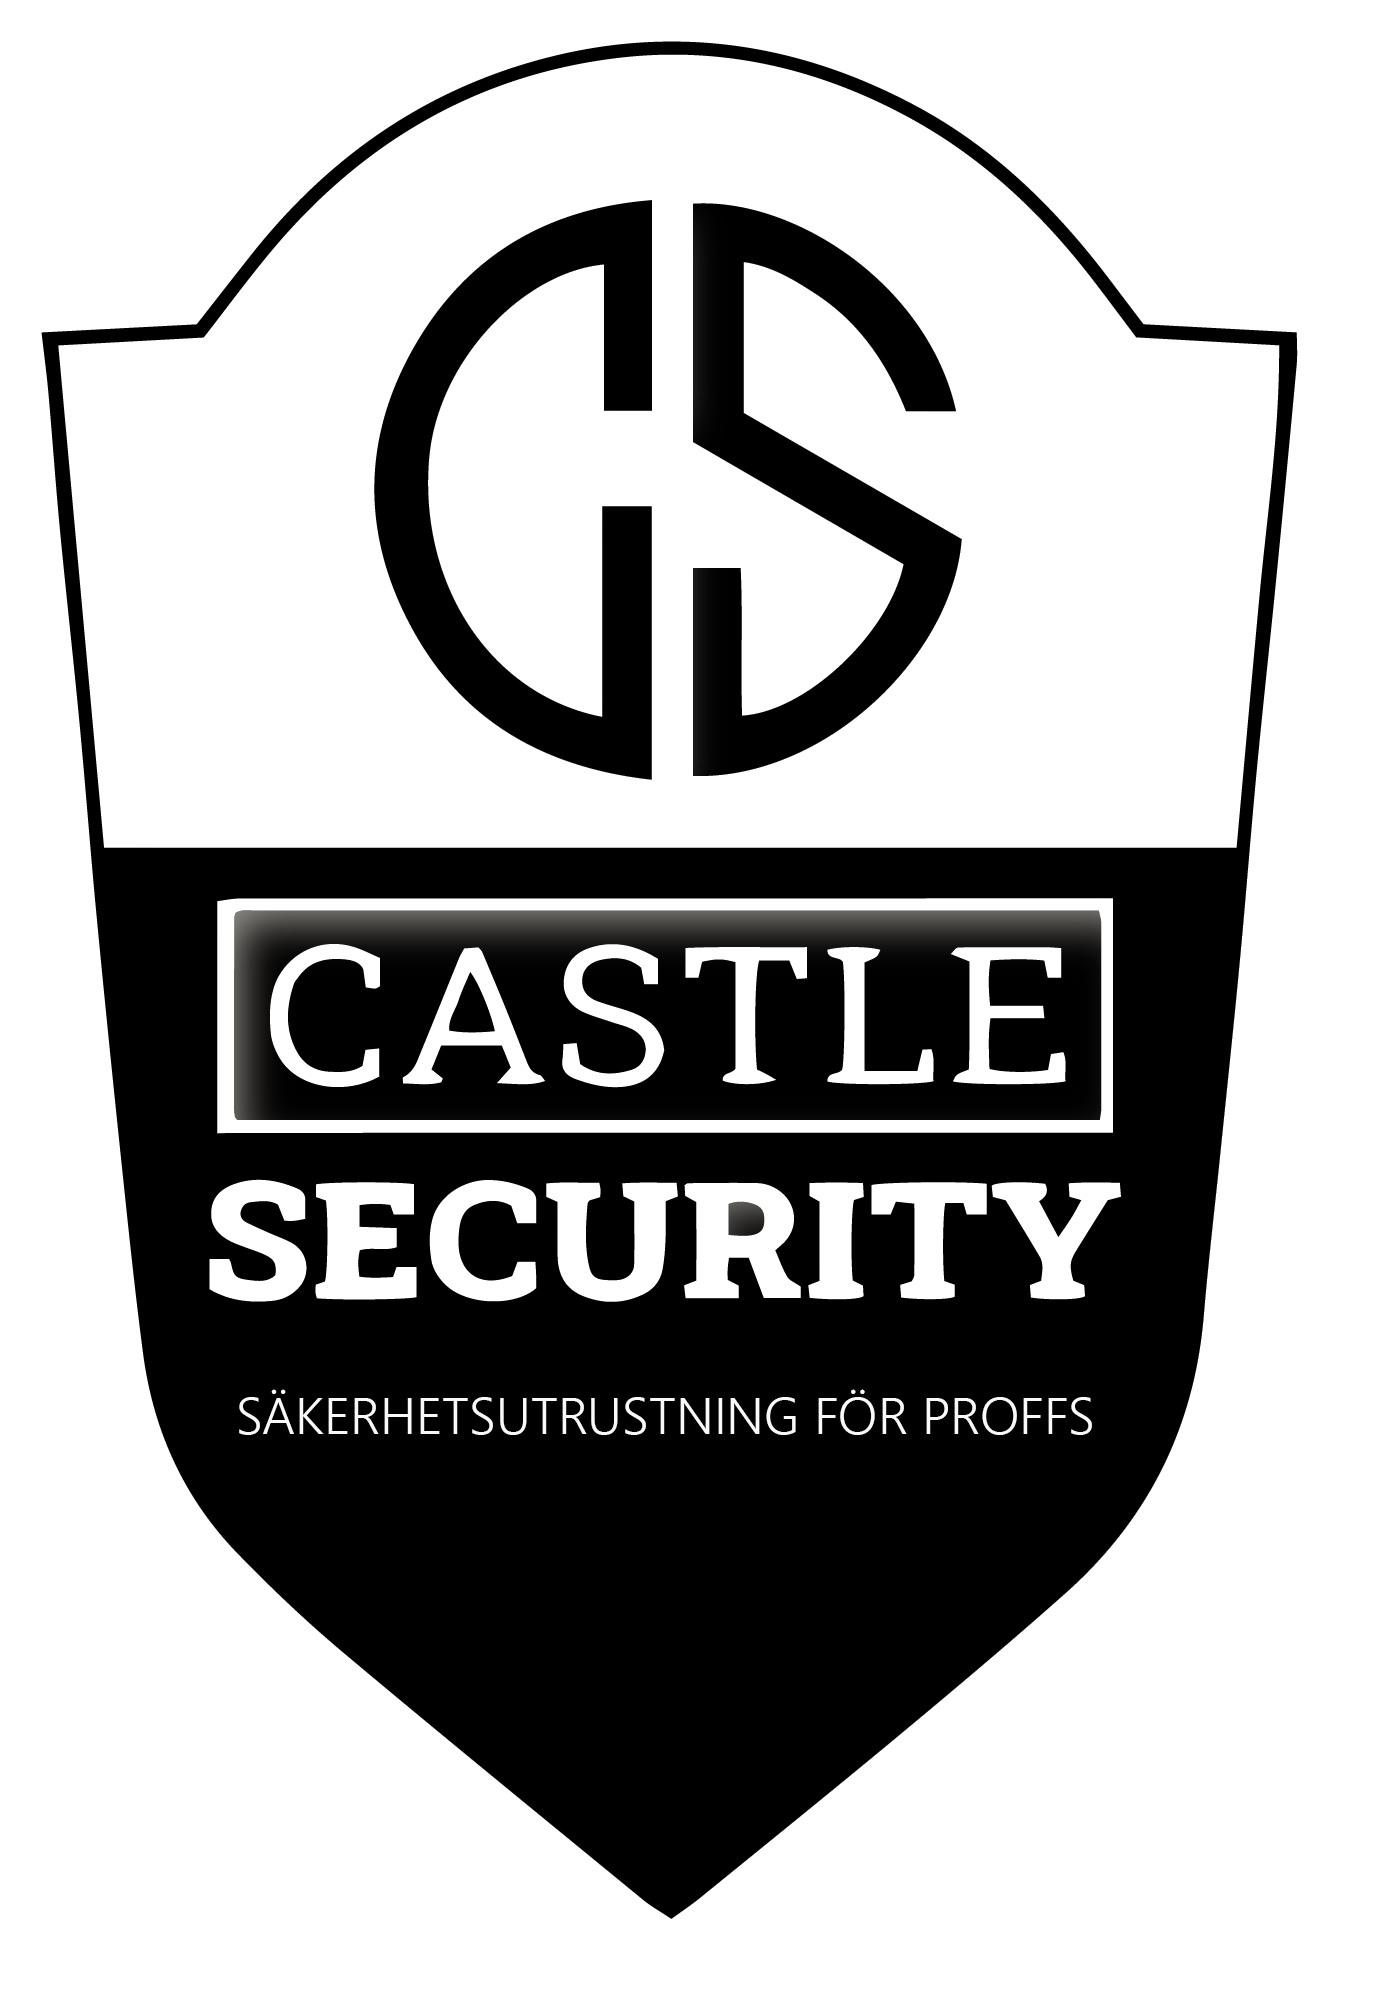 CASTLE SECURITY